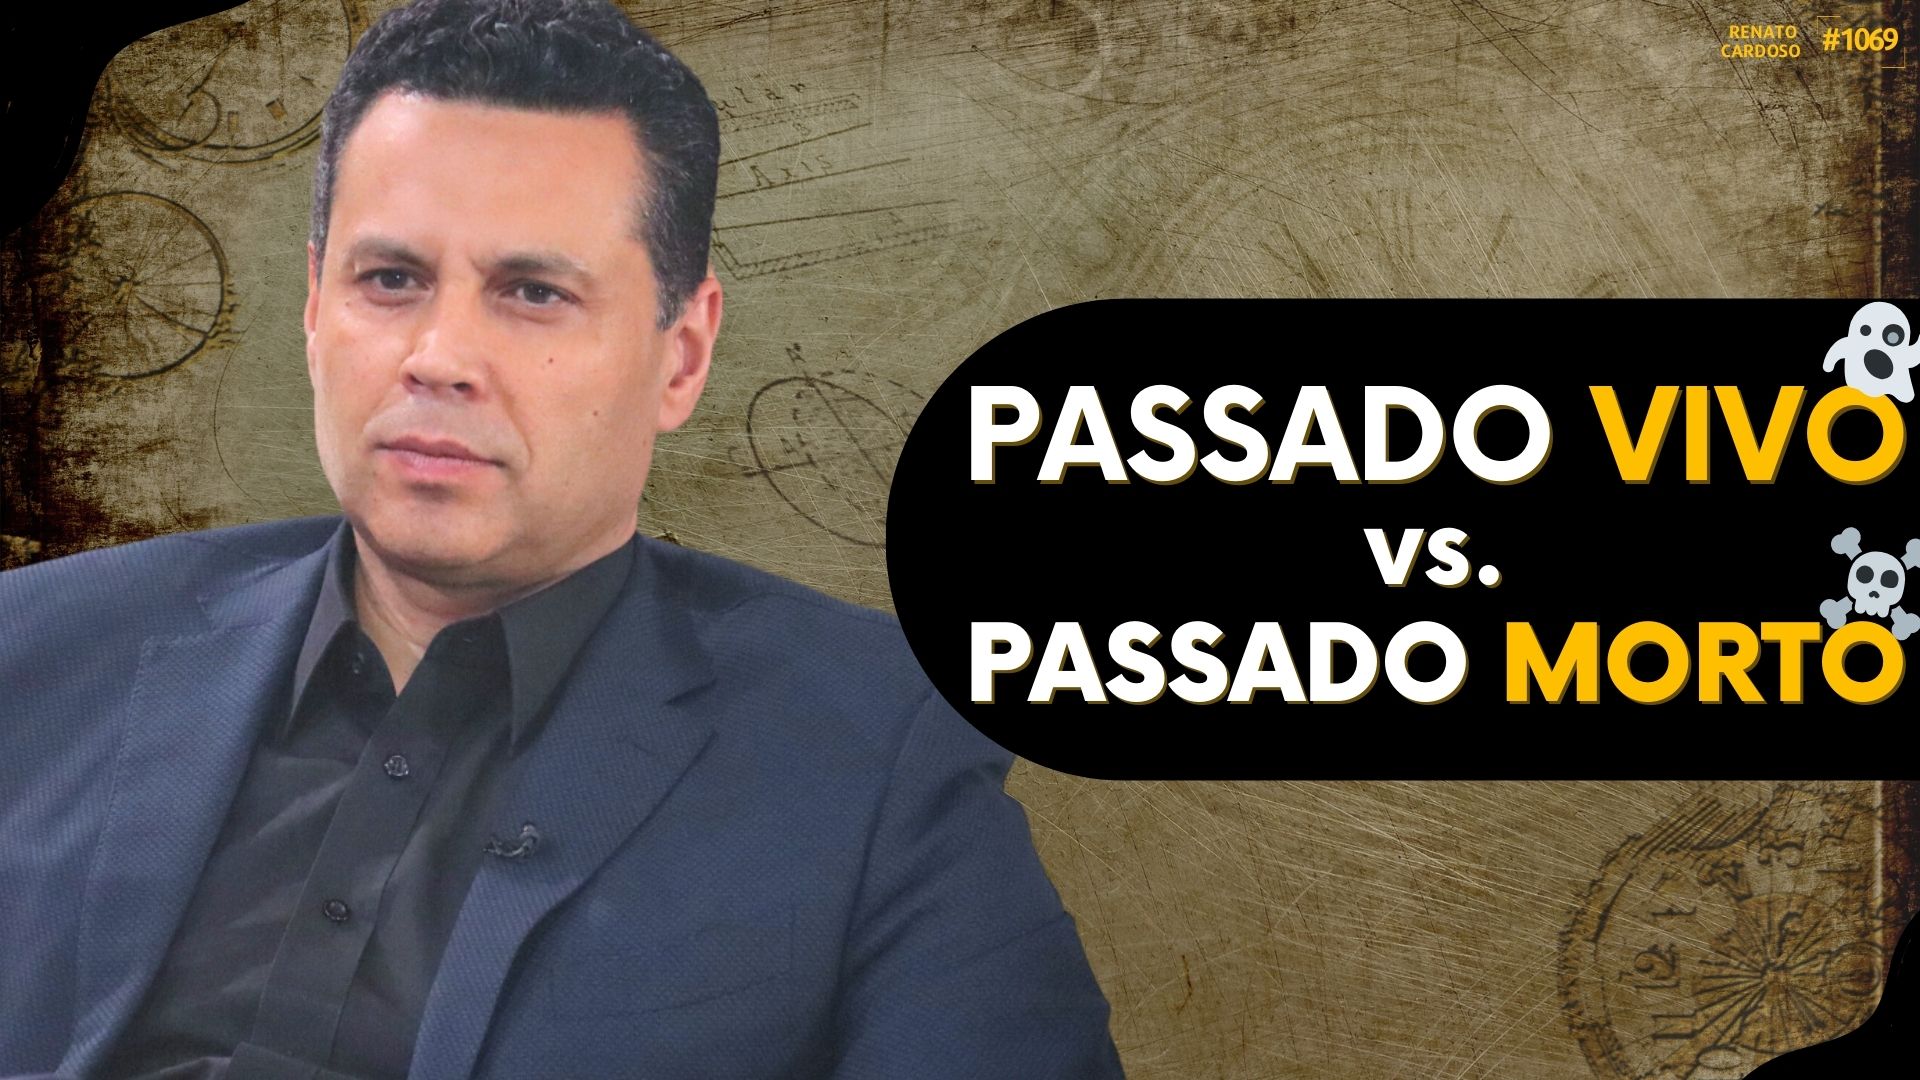 postPASSADO VIVO vs. PASSADO MORTOna categoriaRenato Cardoso